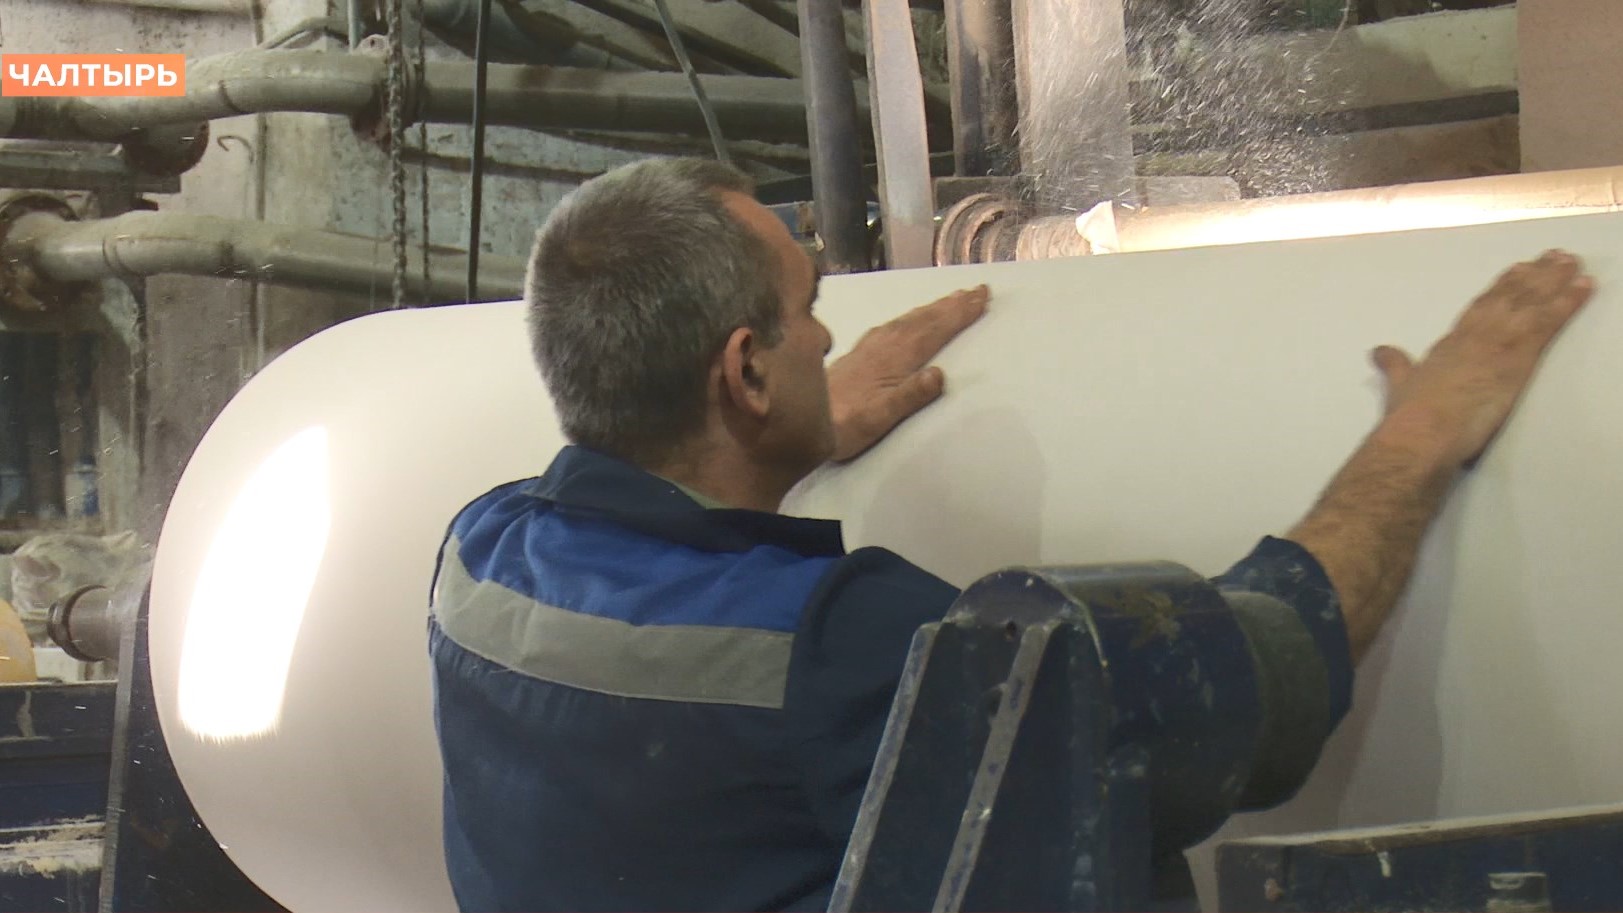 «Бумажная фабрика» в Чалтыре удваивает производство